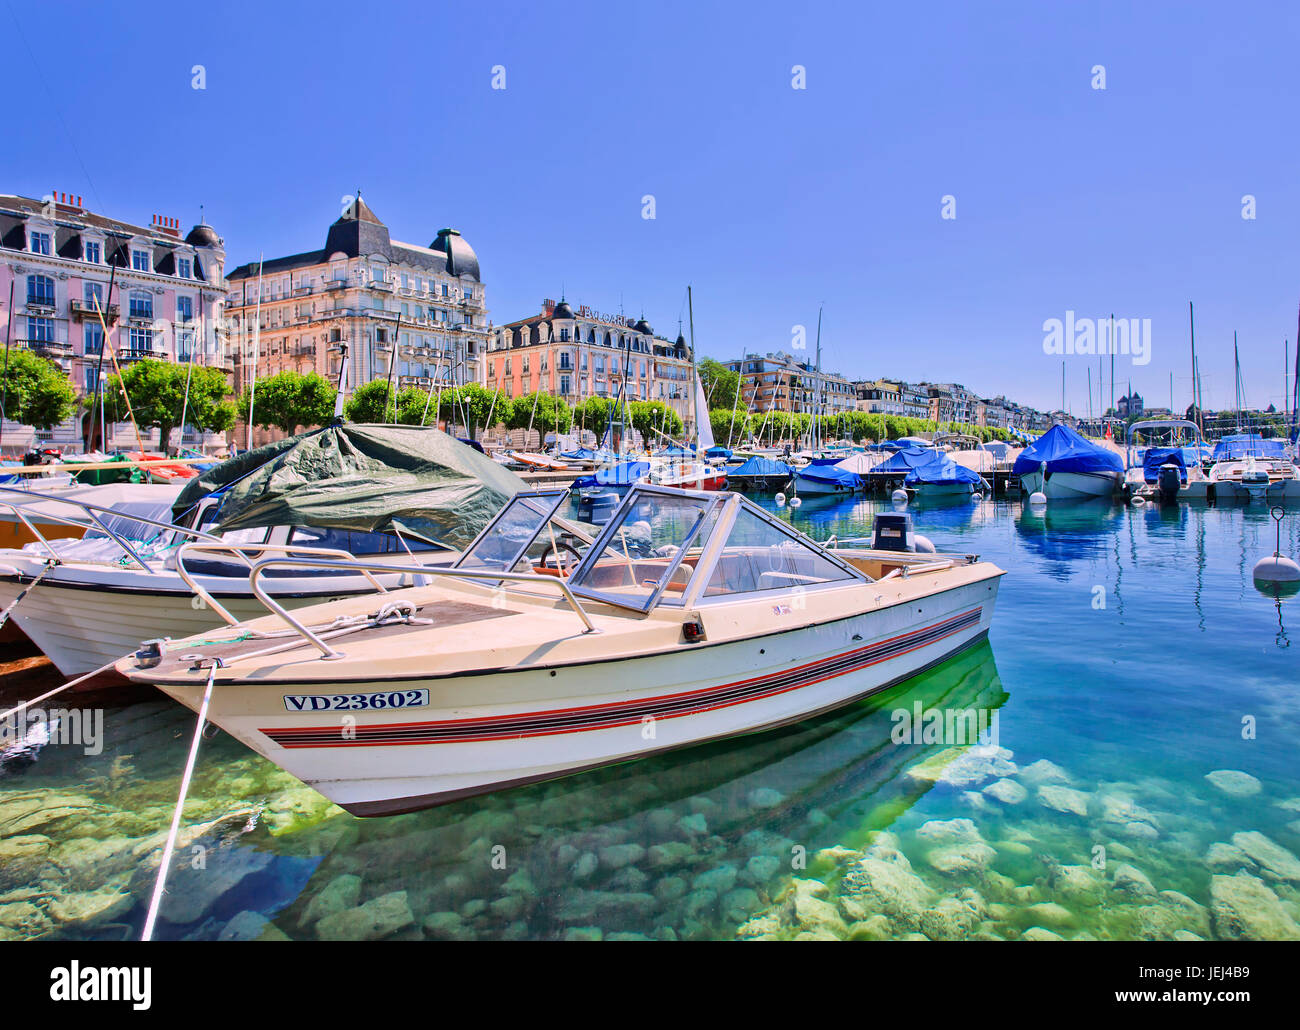 GINEVRA – 25 LUGLIO 2011. Yacht di lusso ancorati al Lago di Ginevra. Il costo della vita in Svizzera è tra i più alti al mondo. Foto Stock